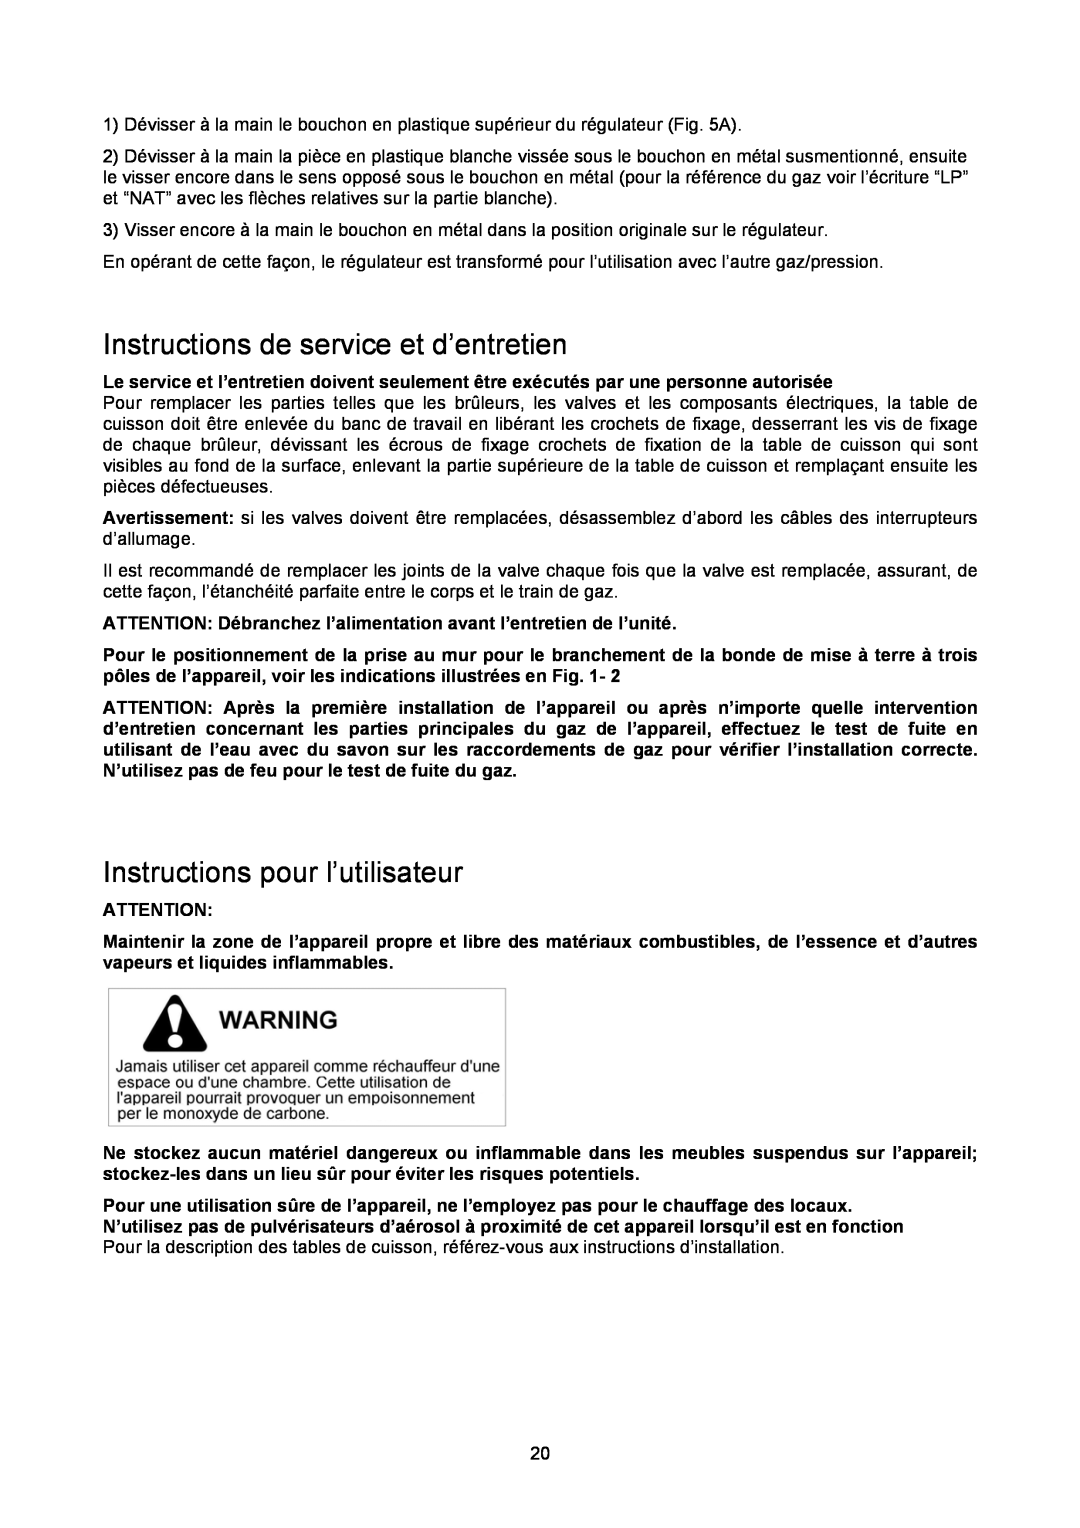 Bertazzoni P24400X manual Instructions de service et d’entretien, Instructions pour l’utilisateur 